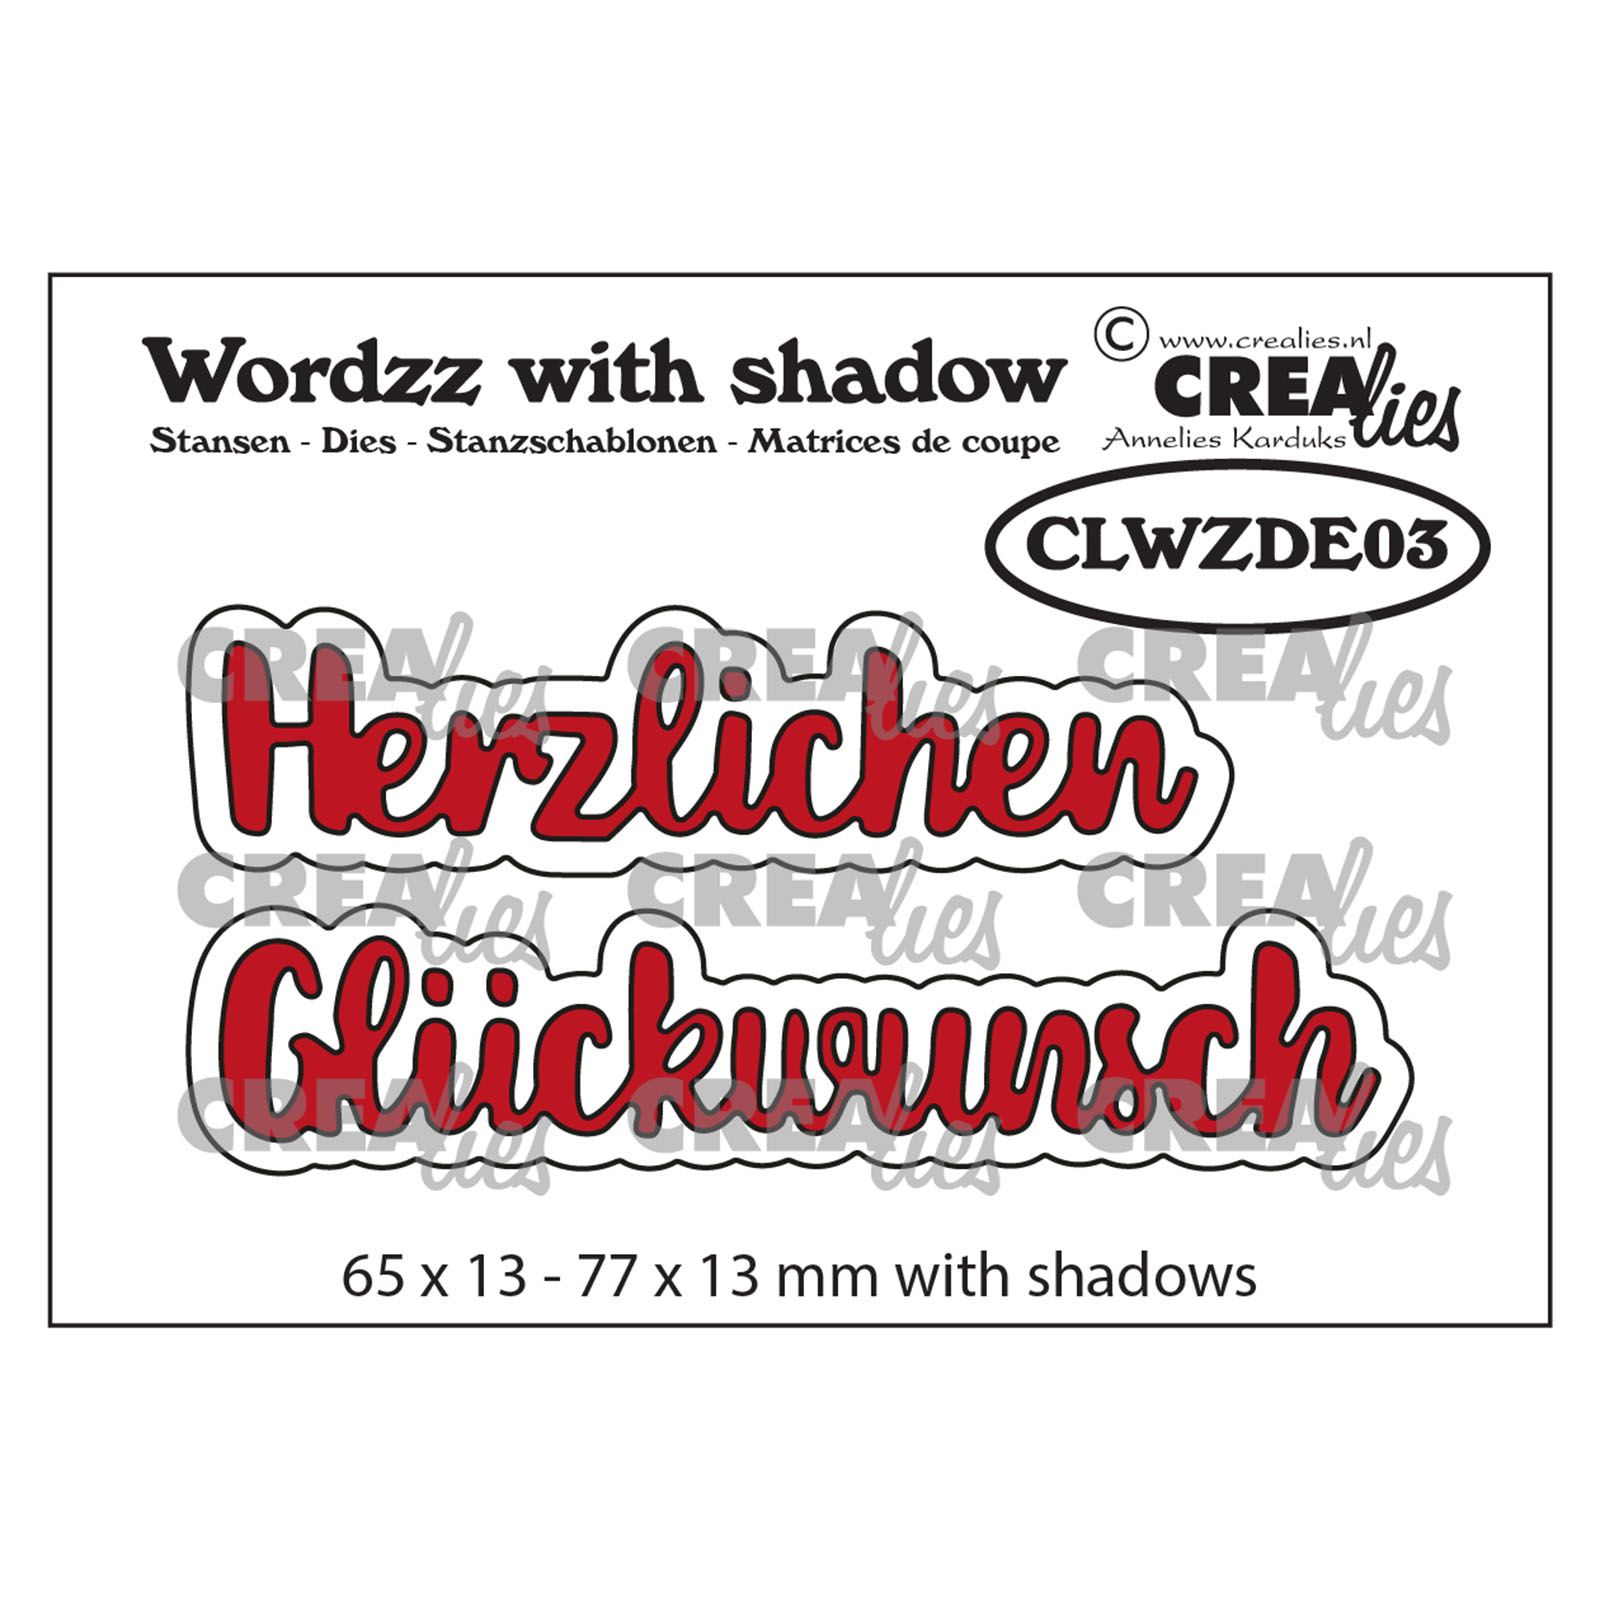 Crealies •  Wordzz with shadow plantilla de corte  "Herzlichen Glückwunsch"